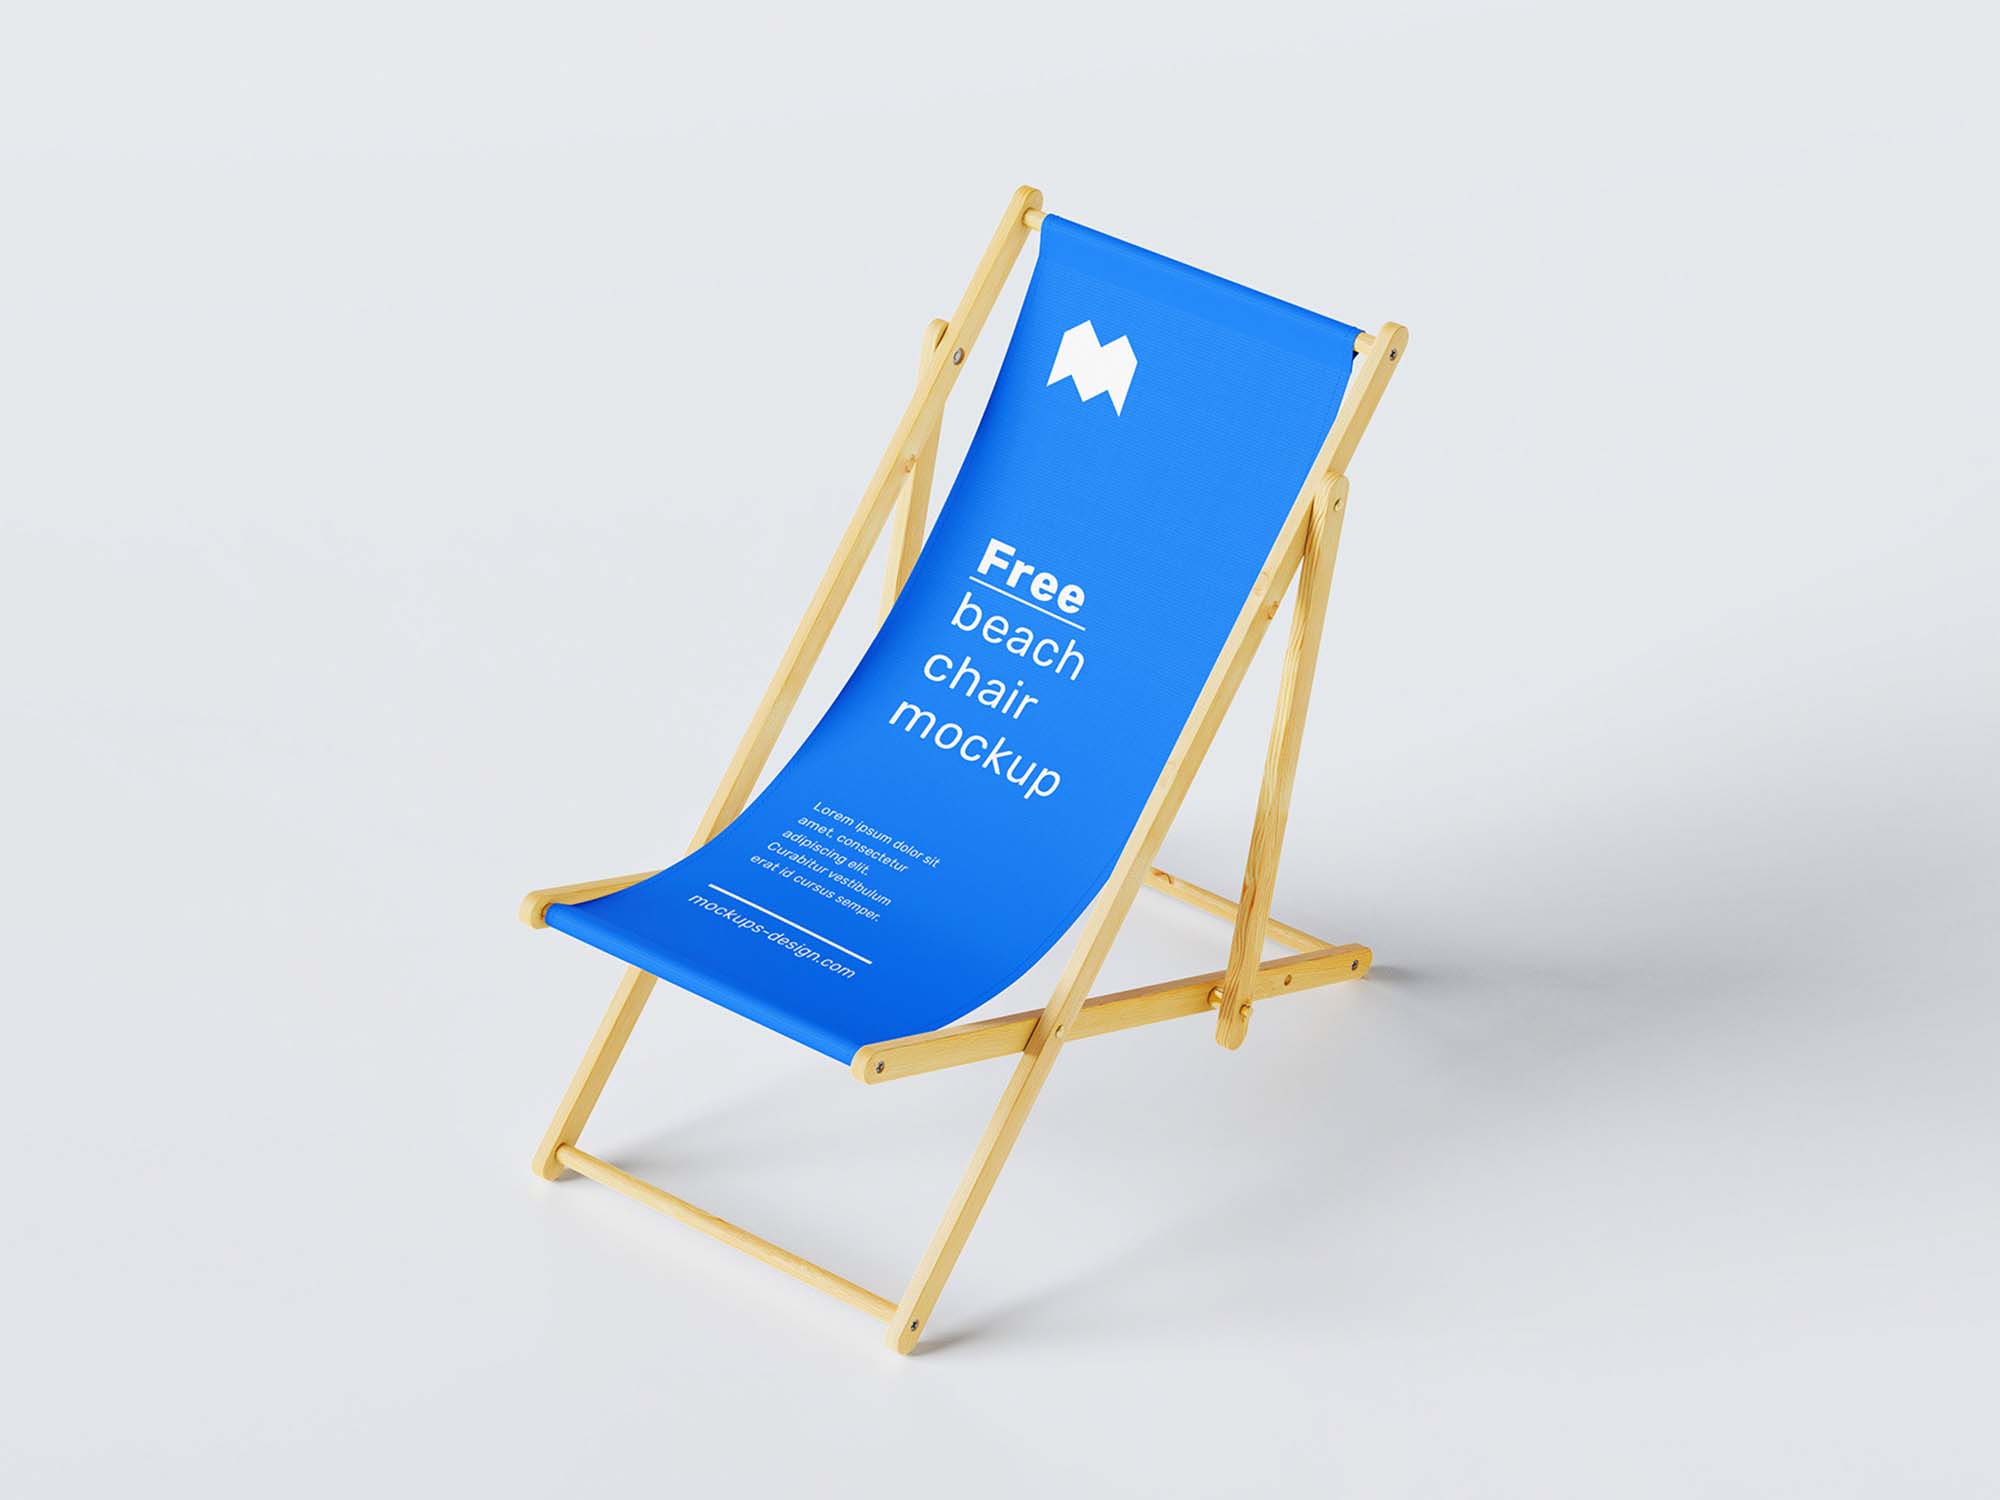 Maqueta de silla de playa gratis